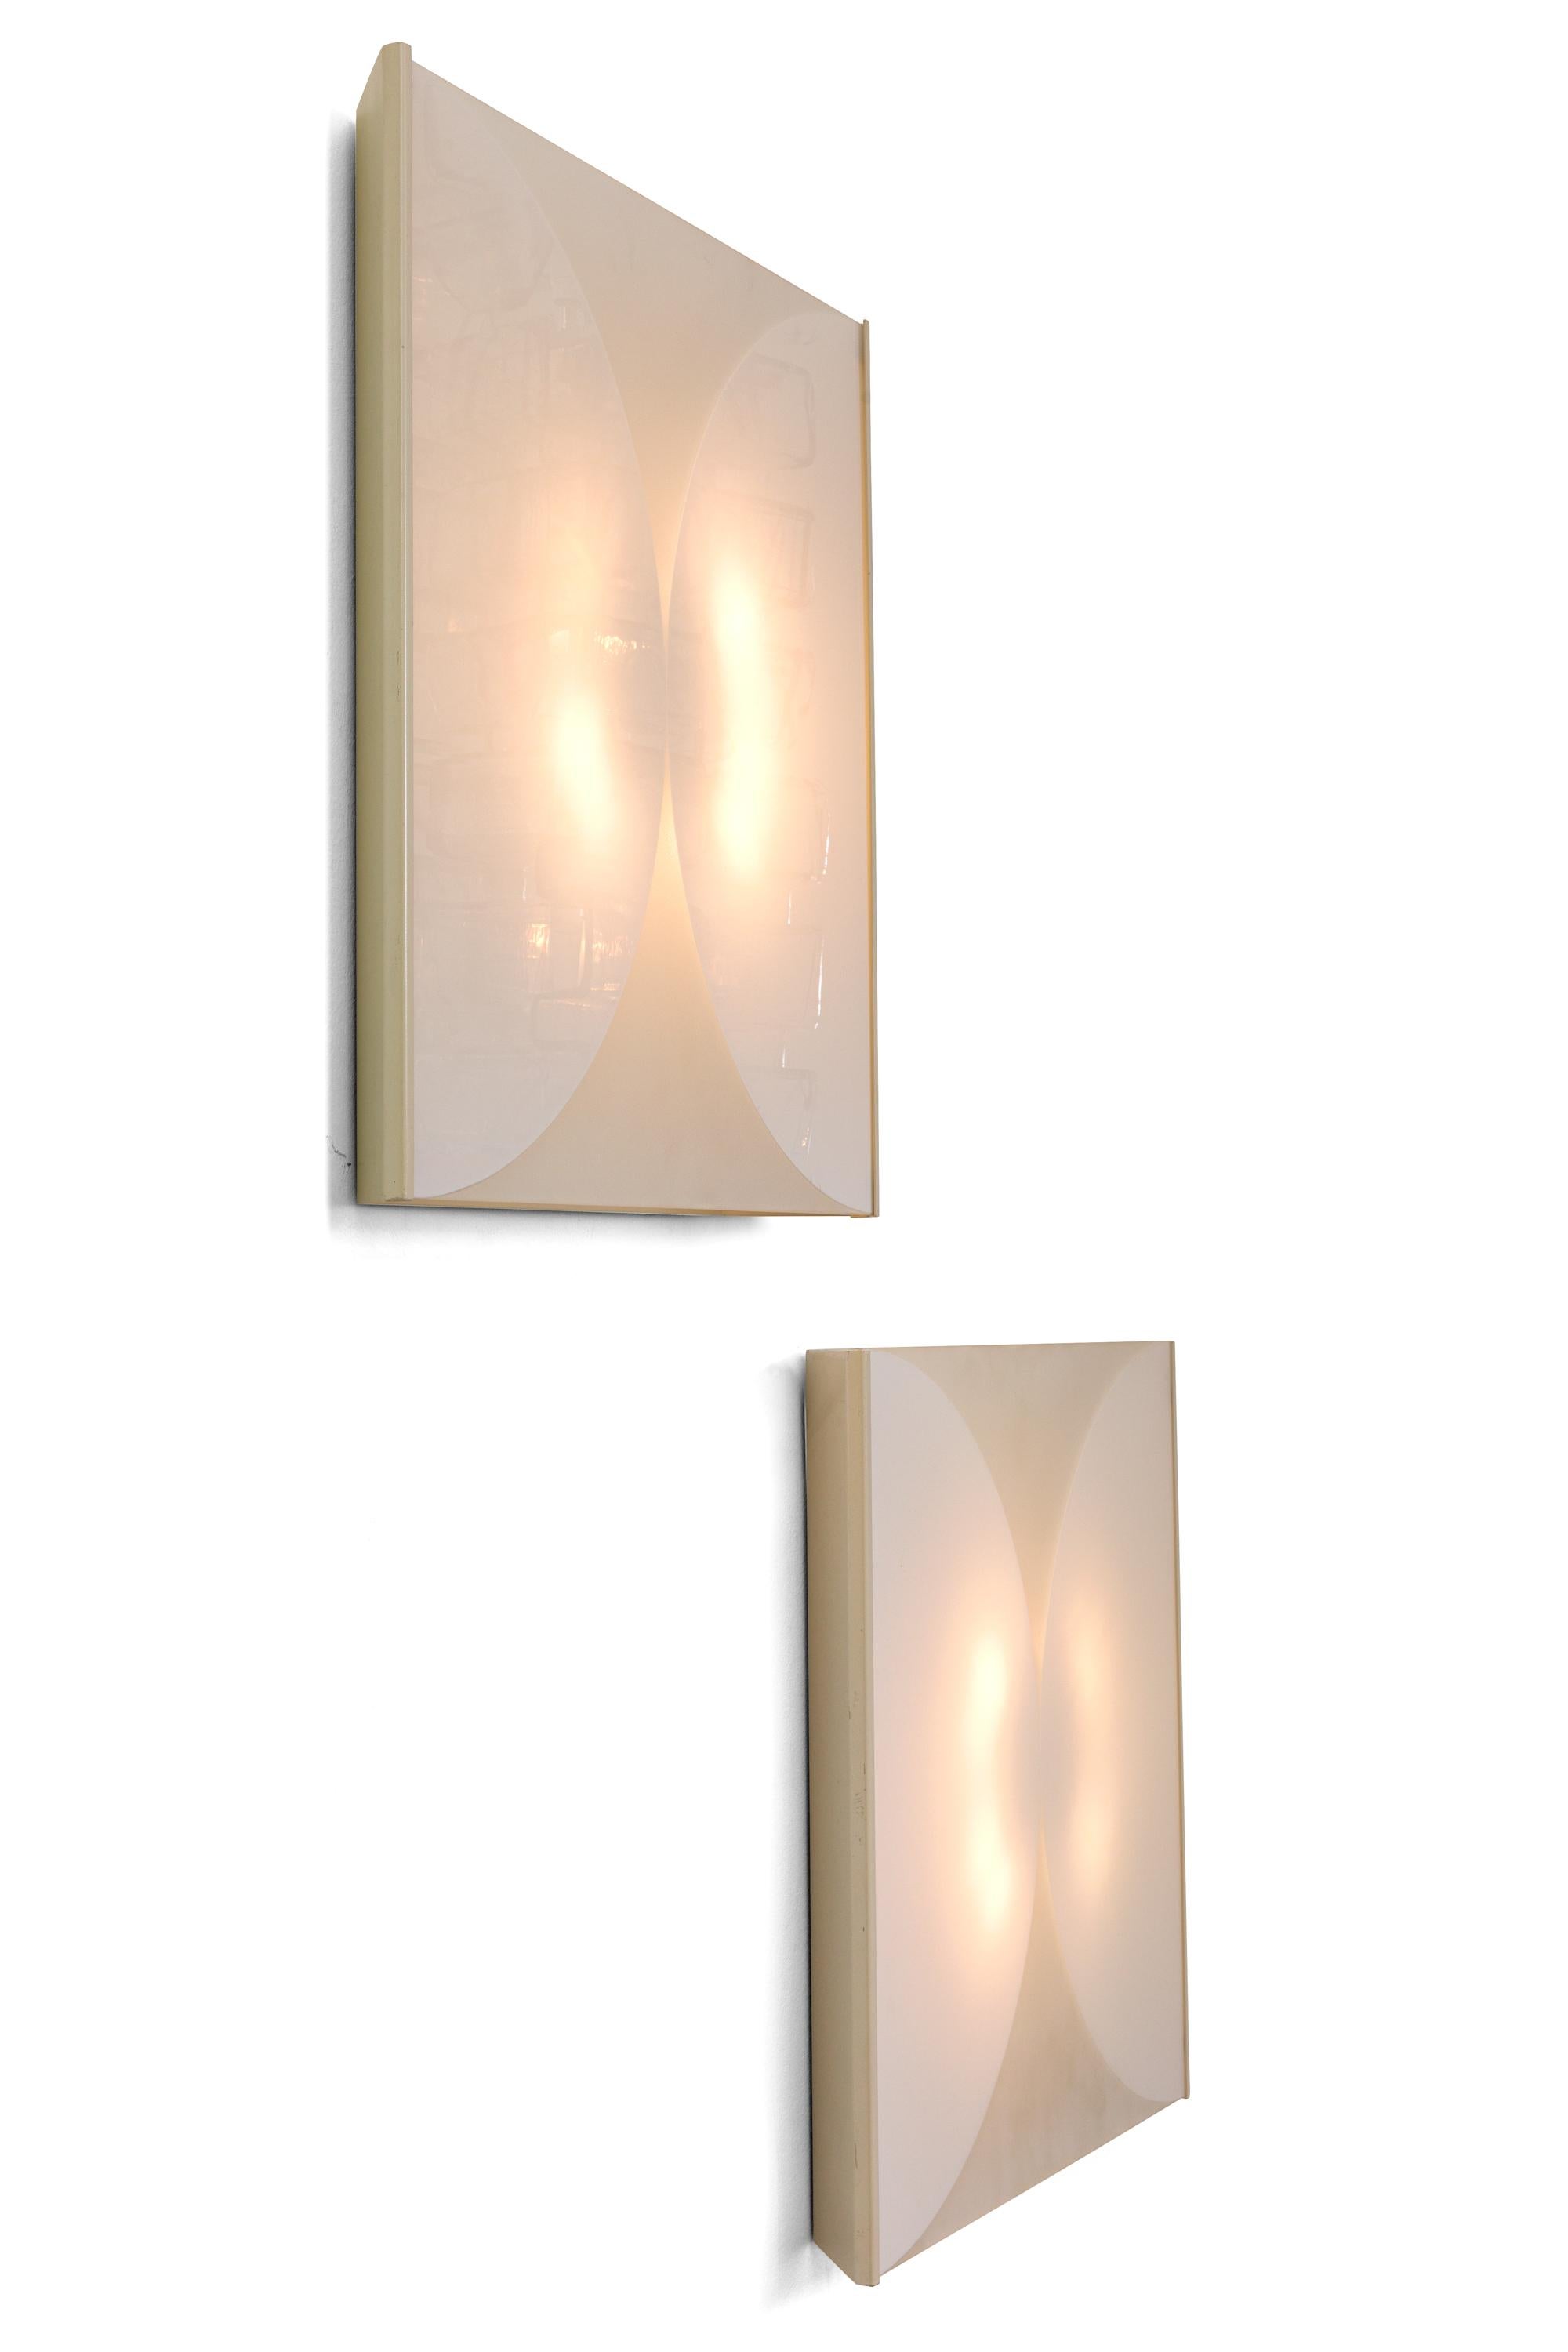 Ces lampes sont fabriquées avec des panneaux de verre qui ont été sablés pour créer le design et sont logées dans un cadre métallique blanc peu profond. Disponible par paire ou à l'unité.